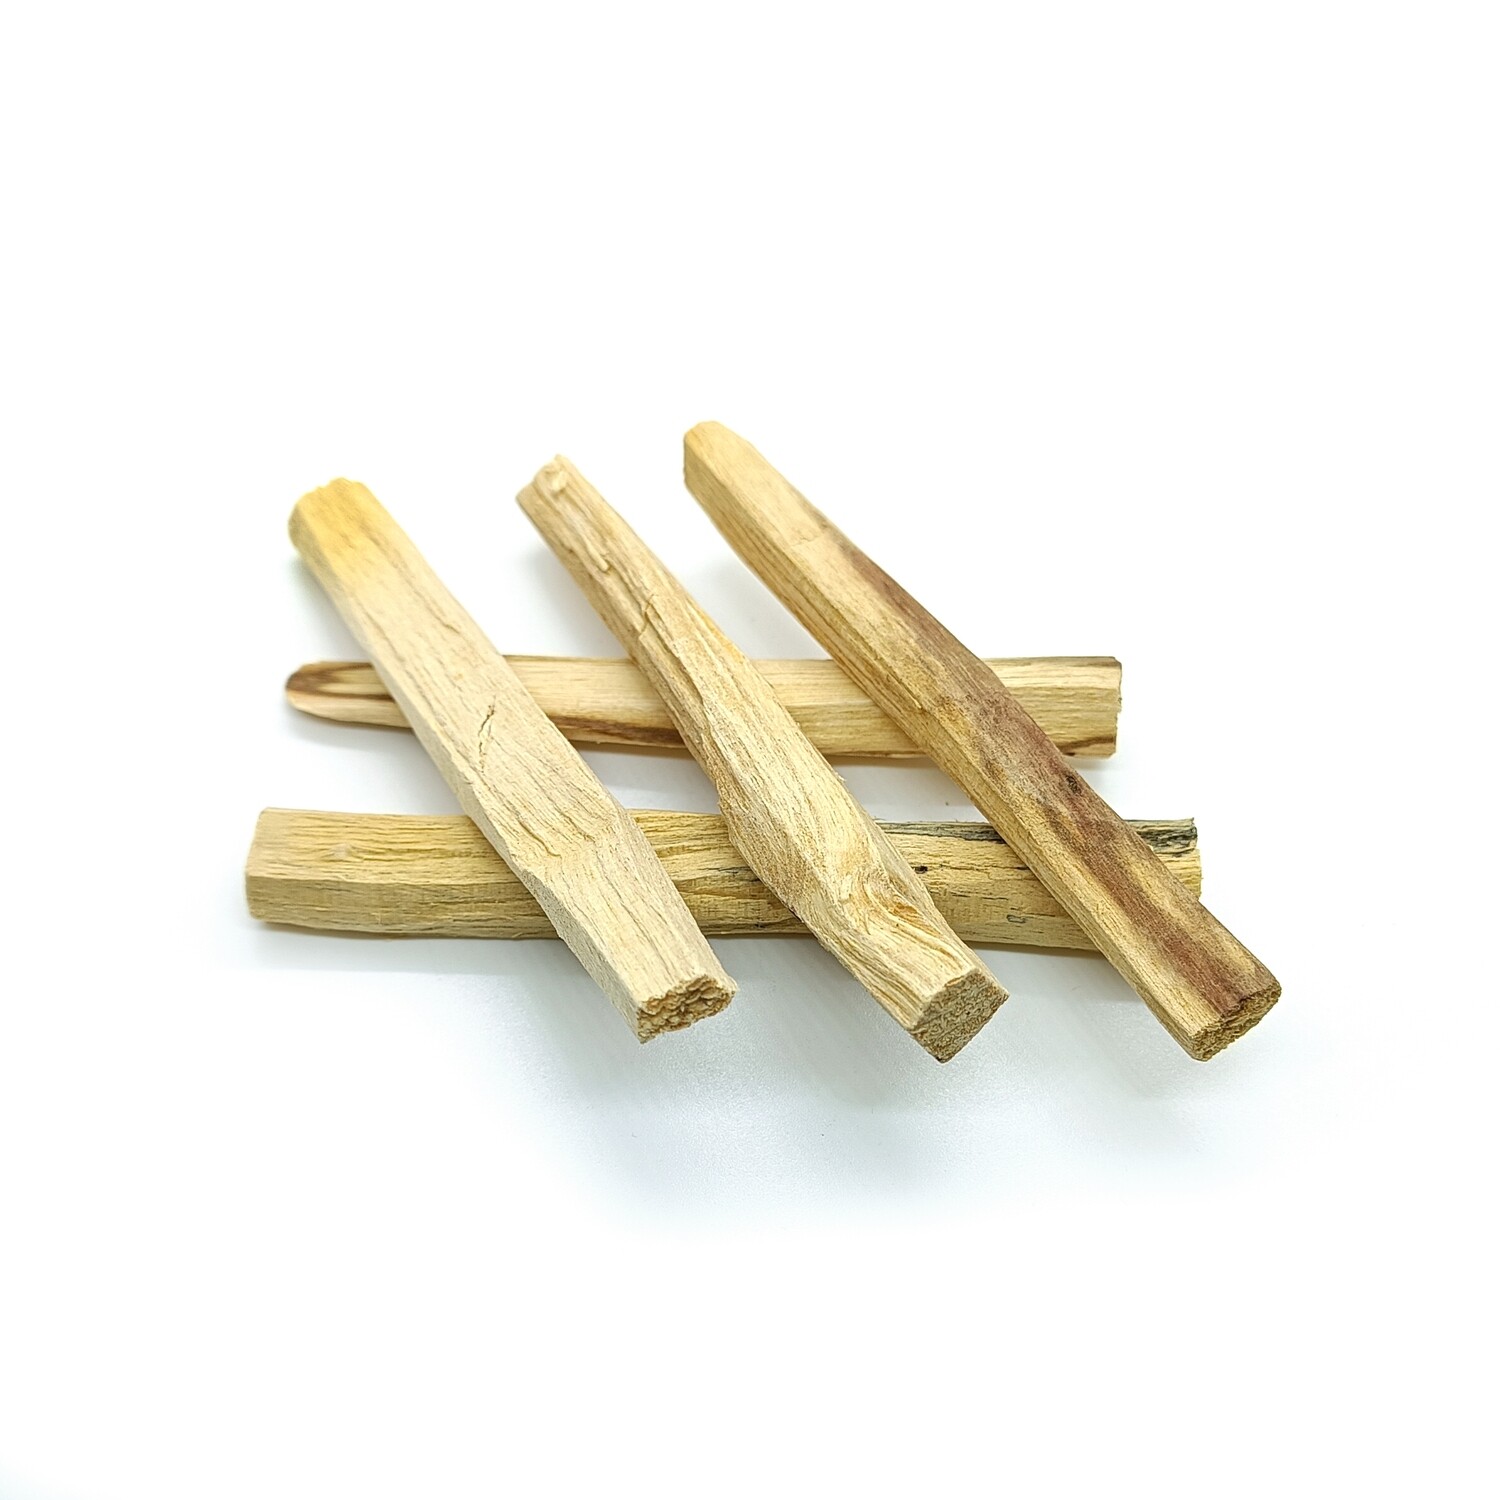 Palo Santo - Holy wood sticks